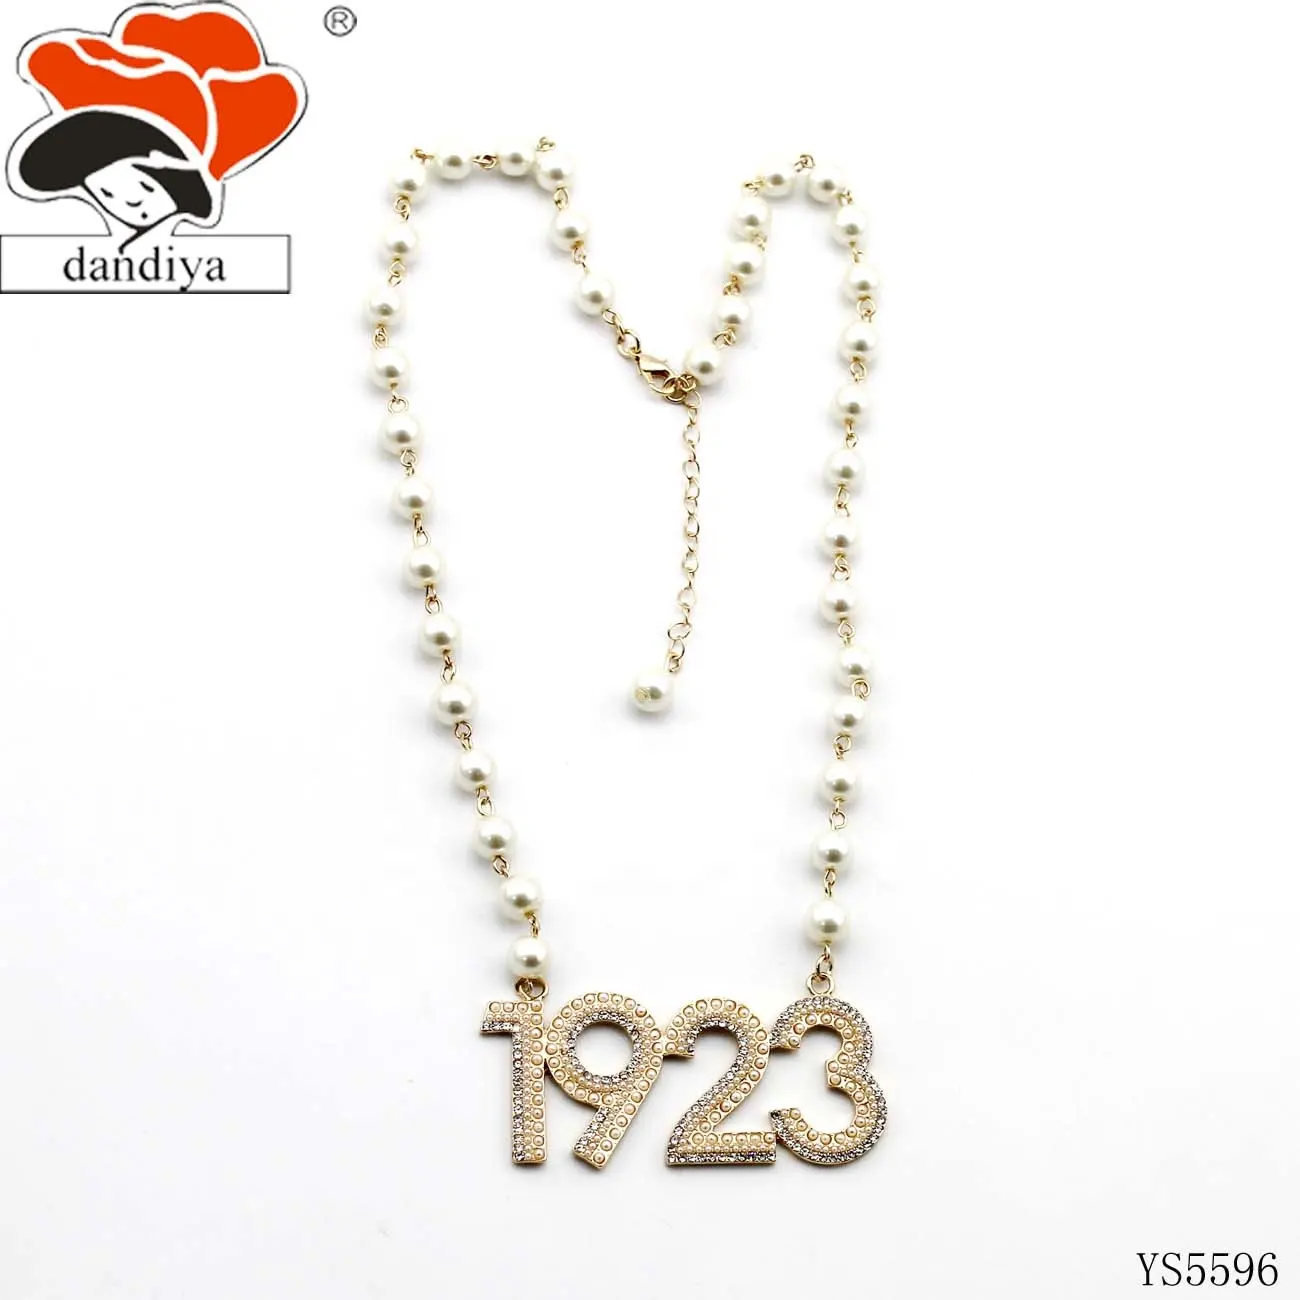 1923 Perle und Kristall-Charmanz mit Brillen Perlenkette griechisches Schwesternhaus & Brüderlichkeit JEUWEL individuelle Jahresnummer Logo-Kette